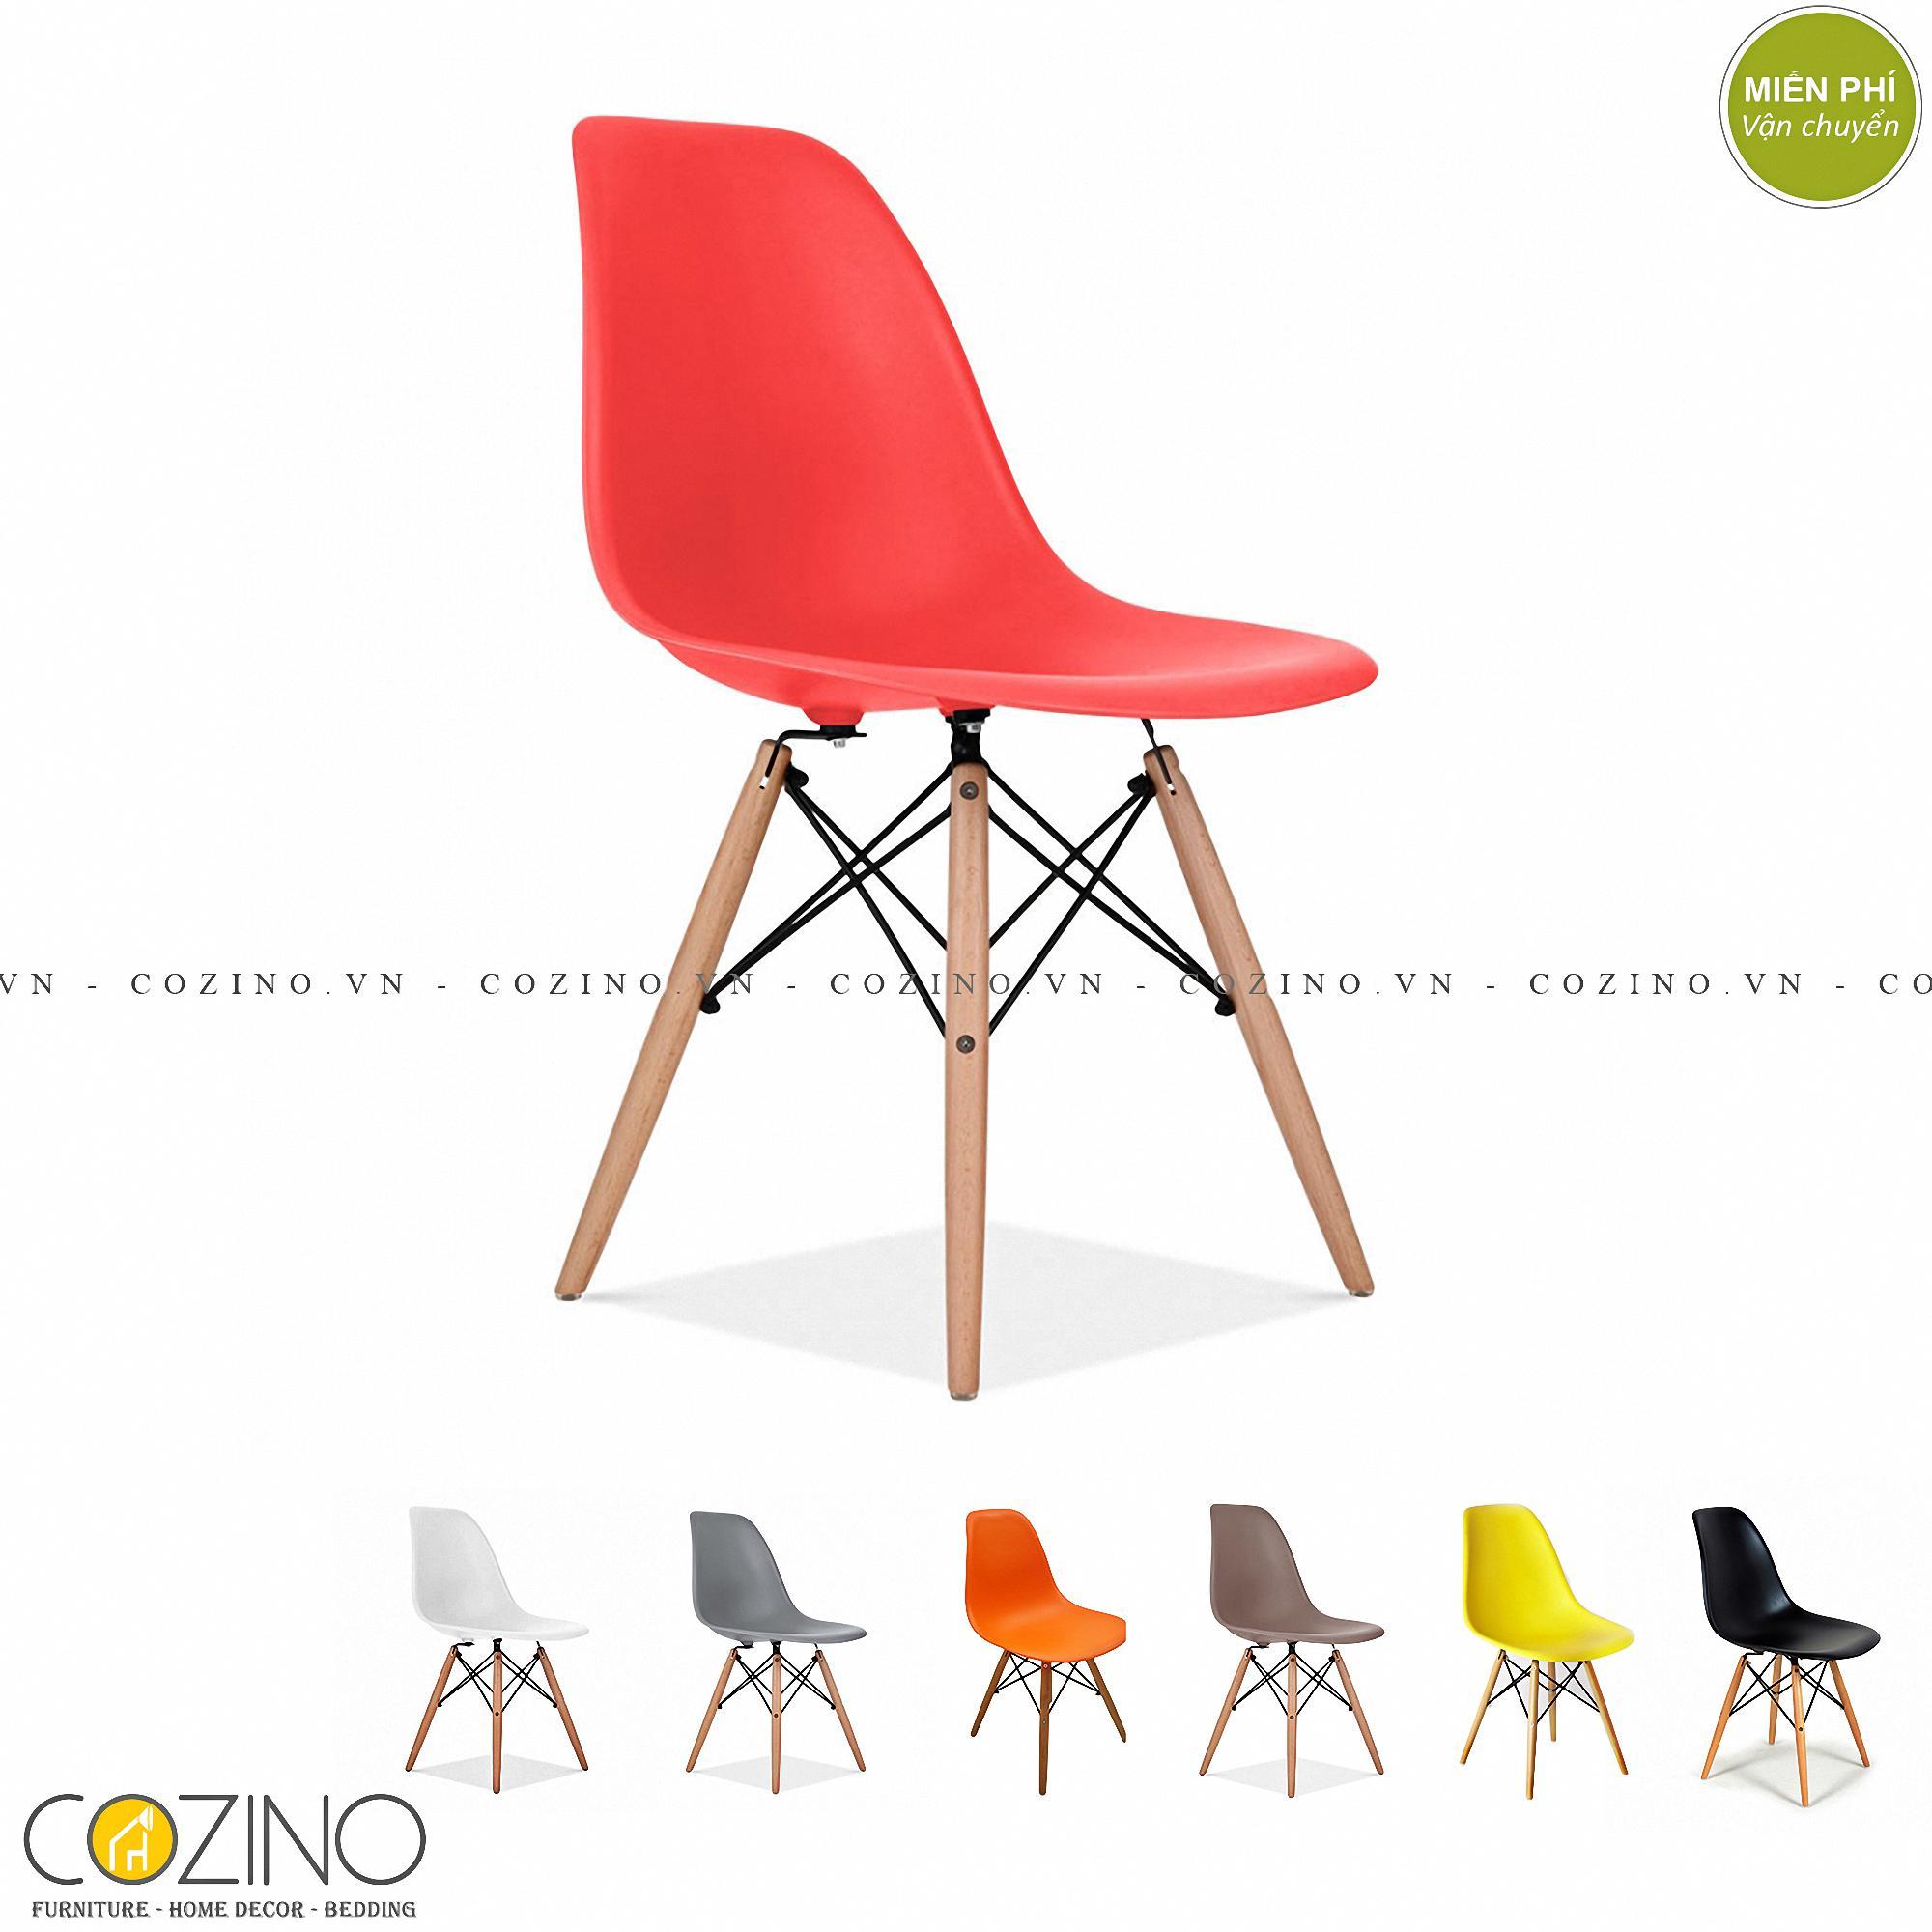 Ghế CZN-Eames màu đỏ chân gỗ